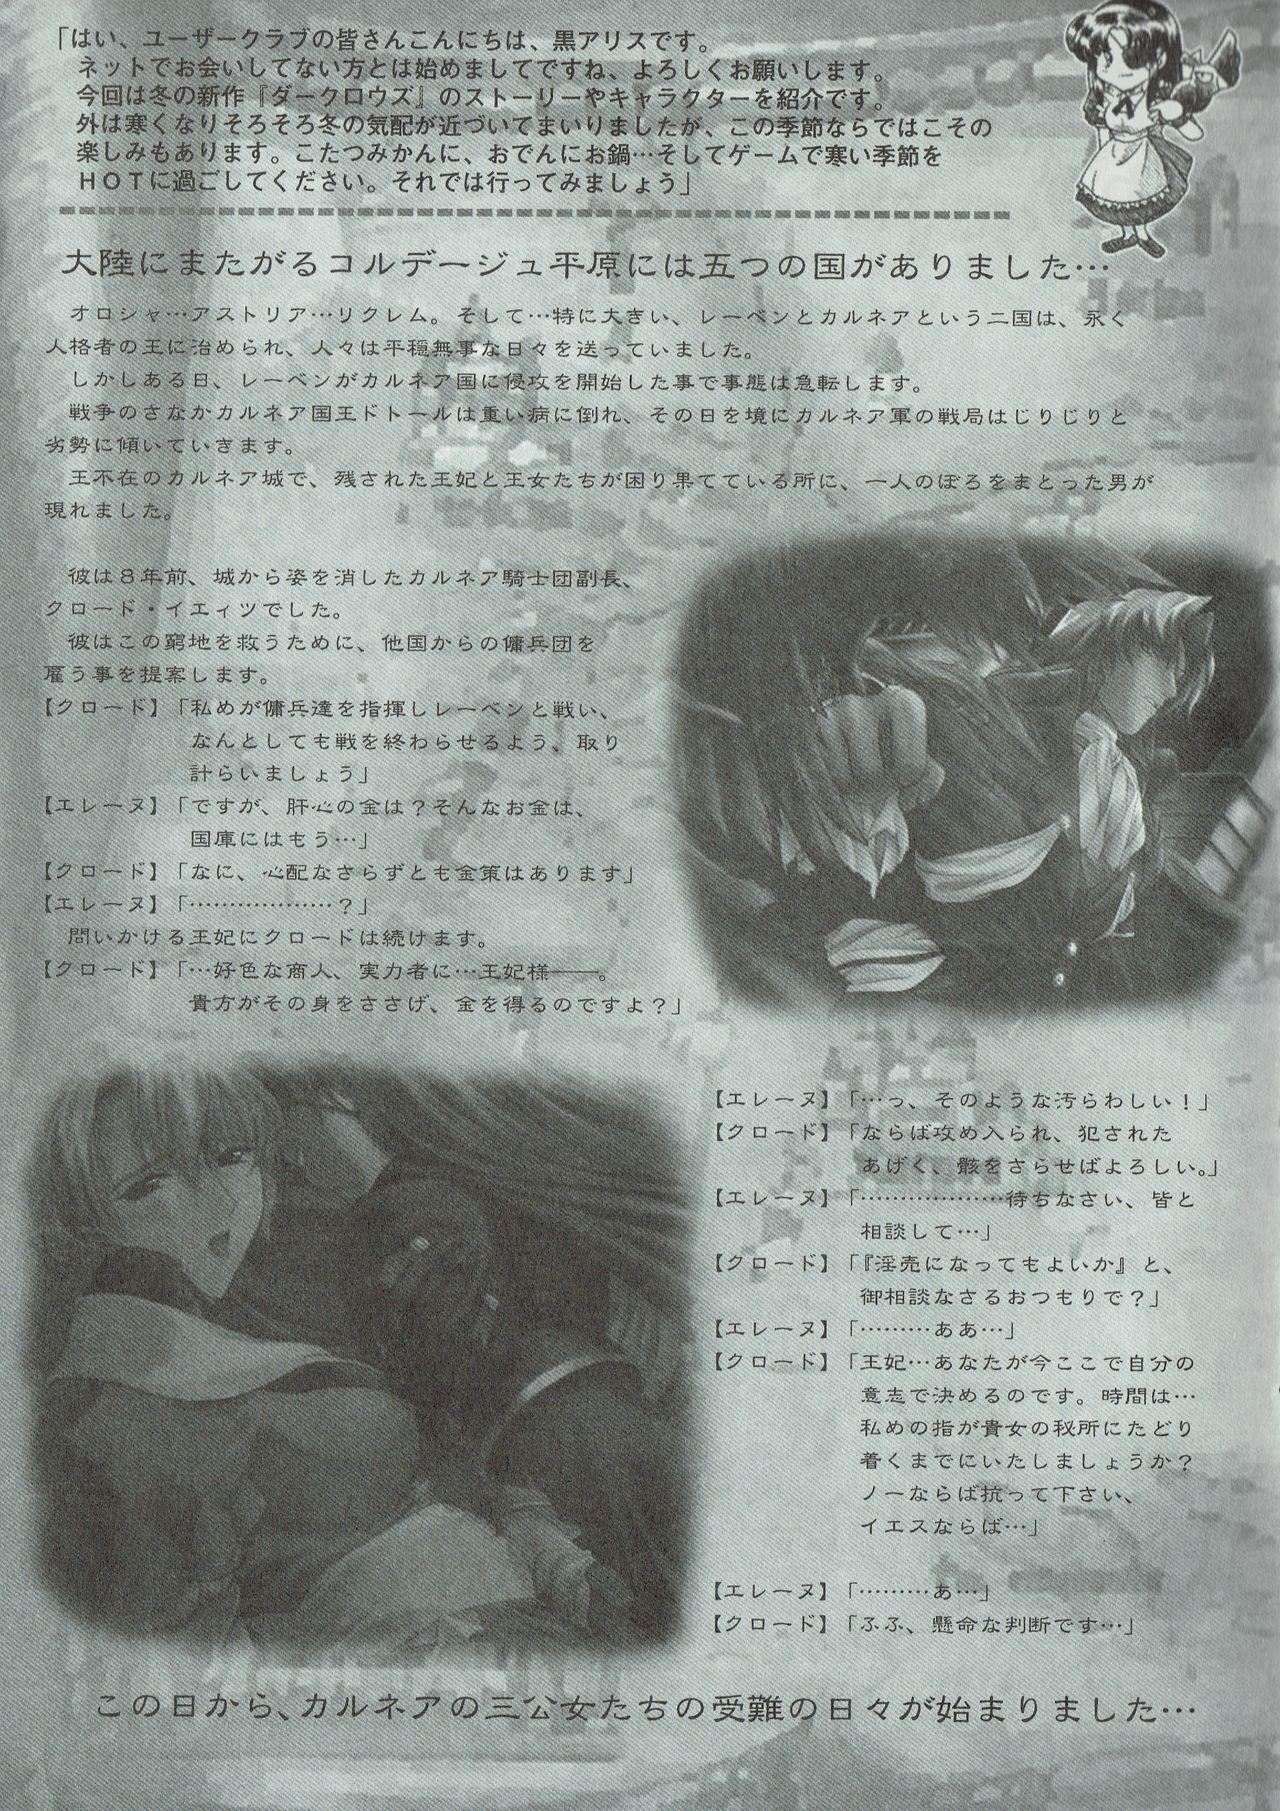 Arisu no Denchi Bakudan Vol. 07 3